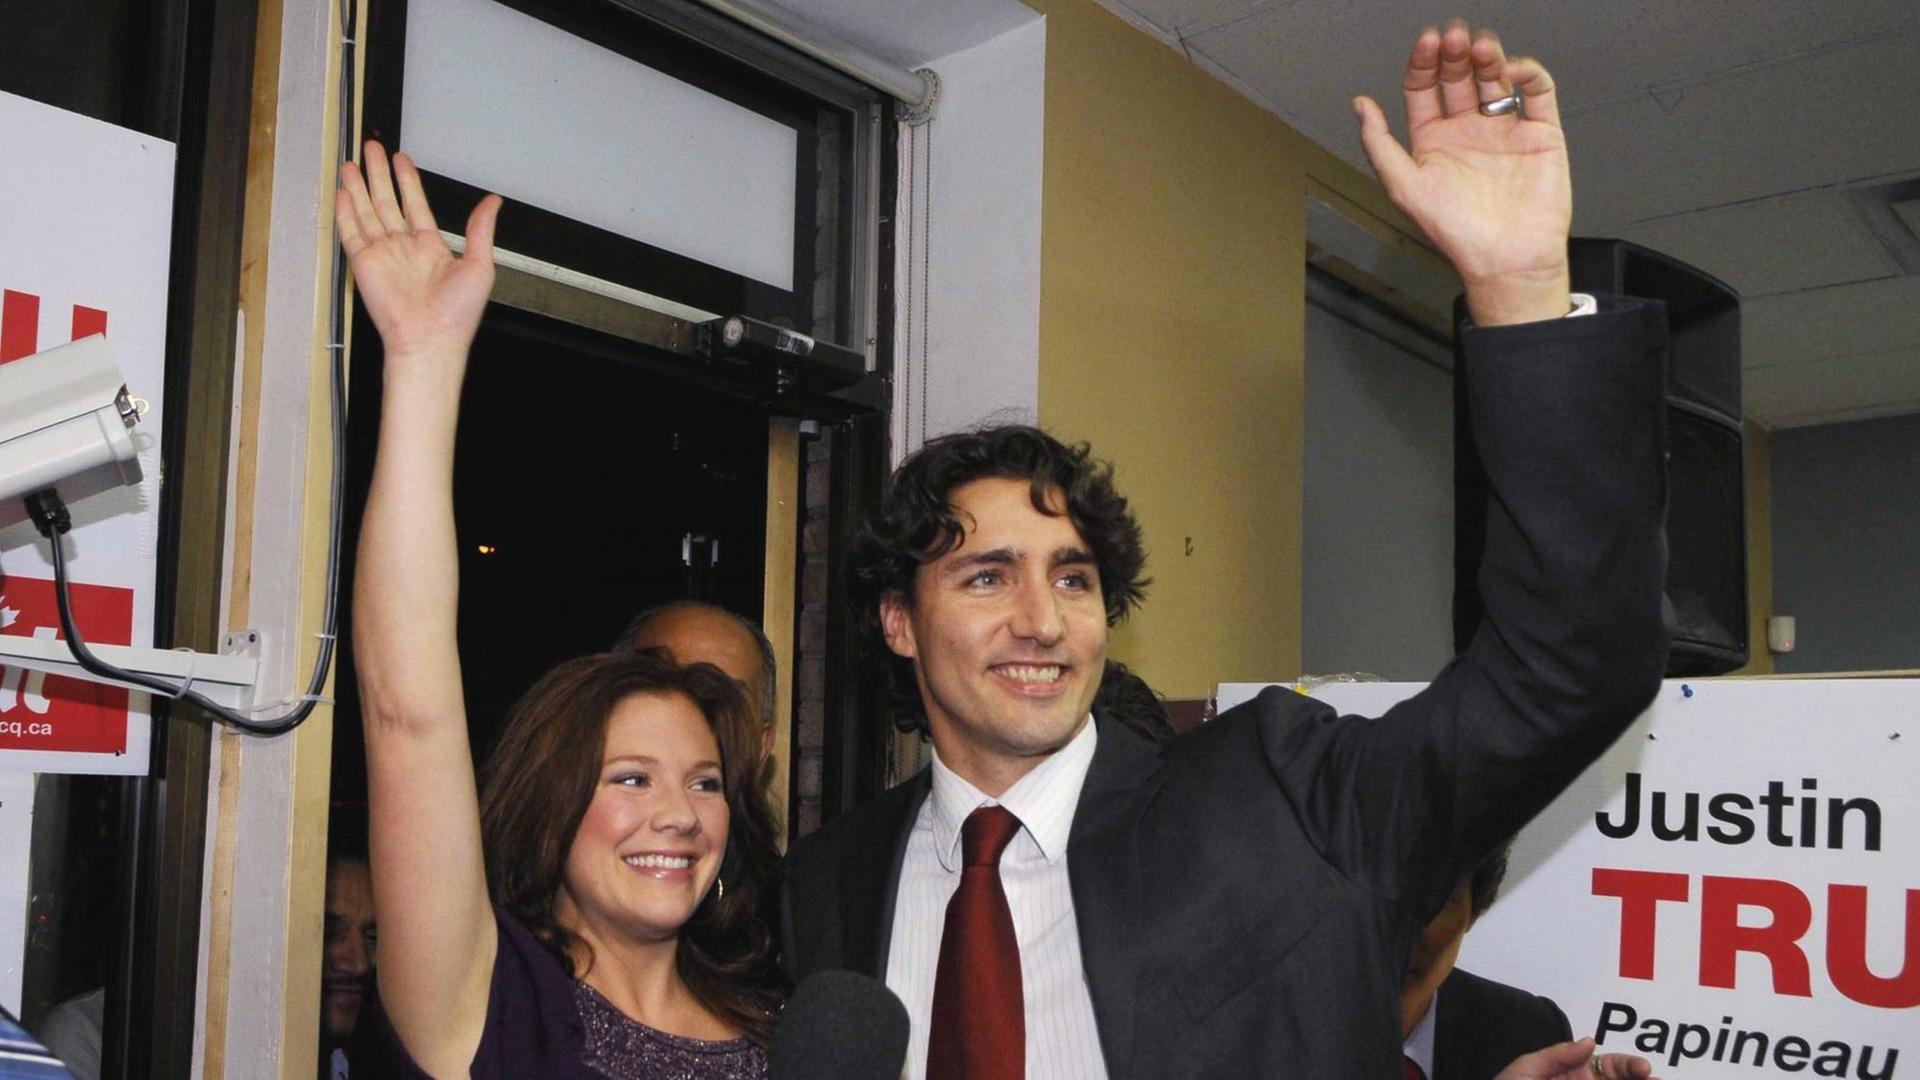 Ein Archivbild zeigt Justin Trudeau und seine Frau, die Anhängern zuwinken.